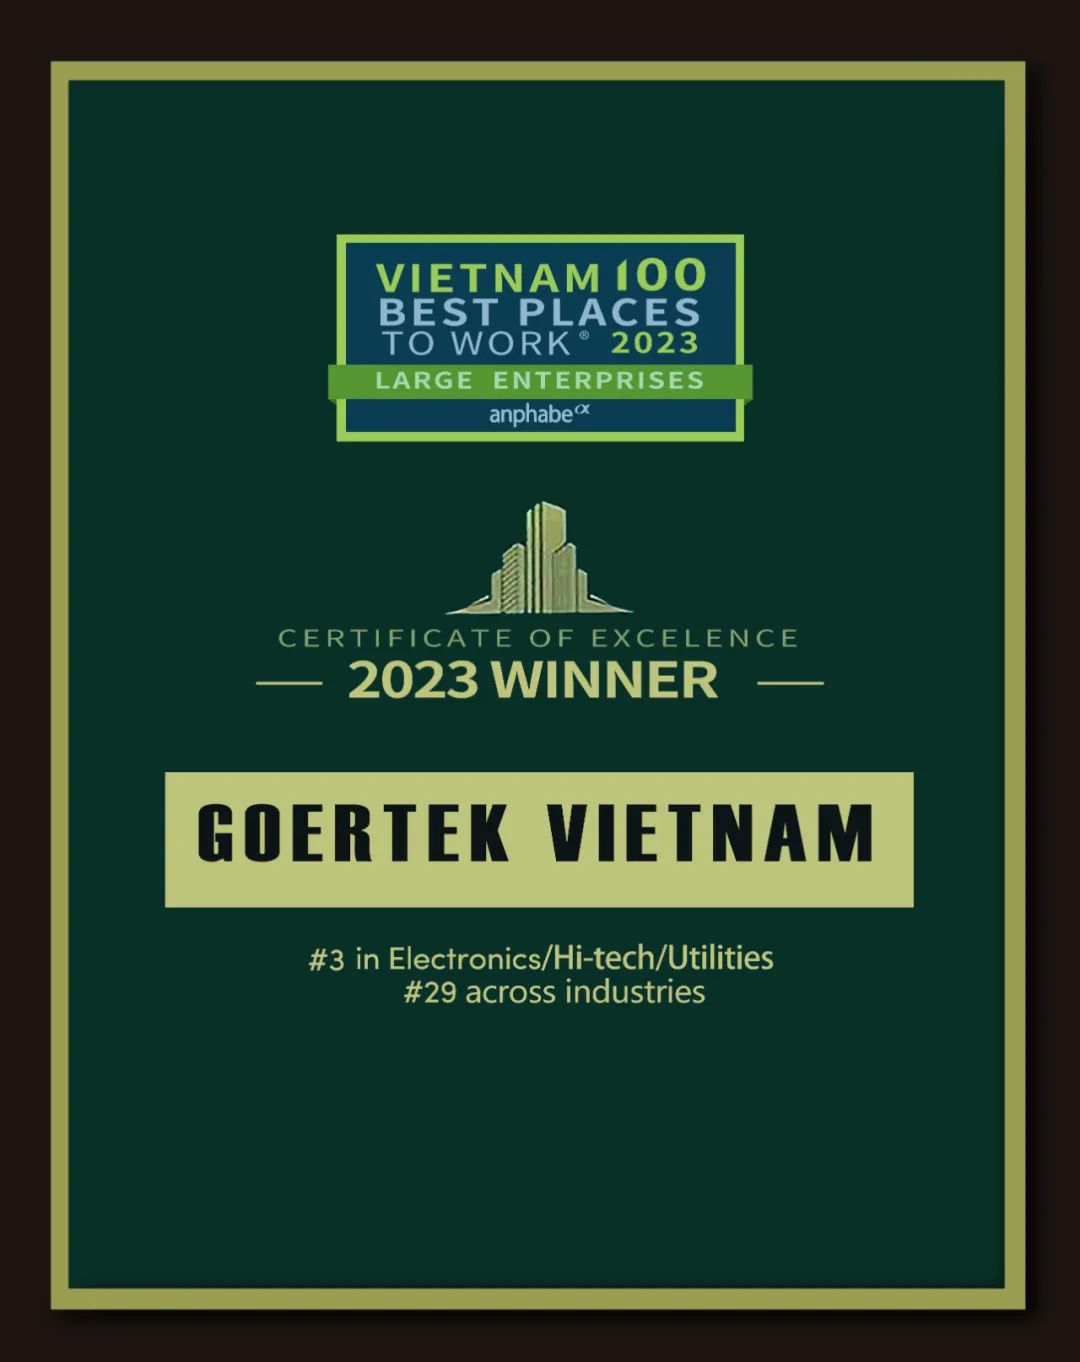 再次入选！歌尔越南荣获“越南最佳工作场所100强”